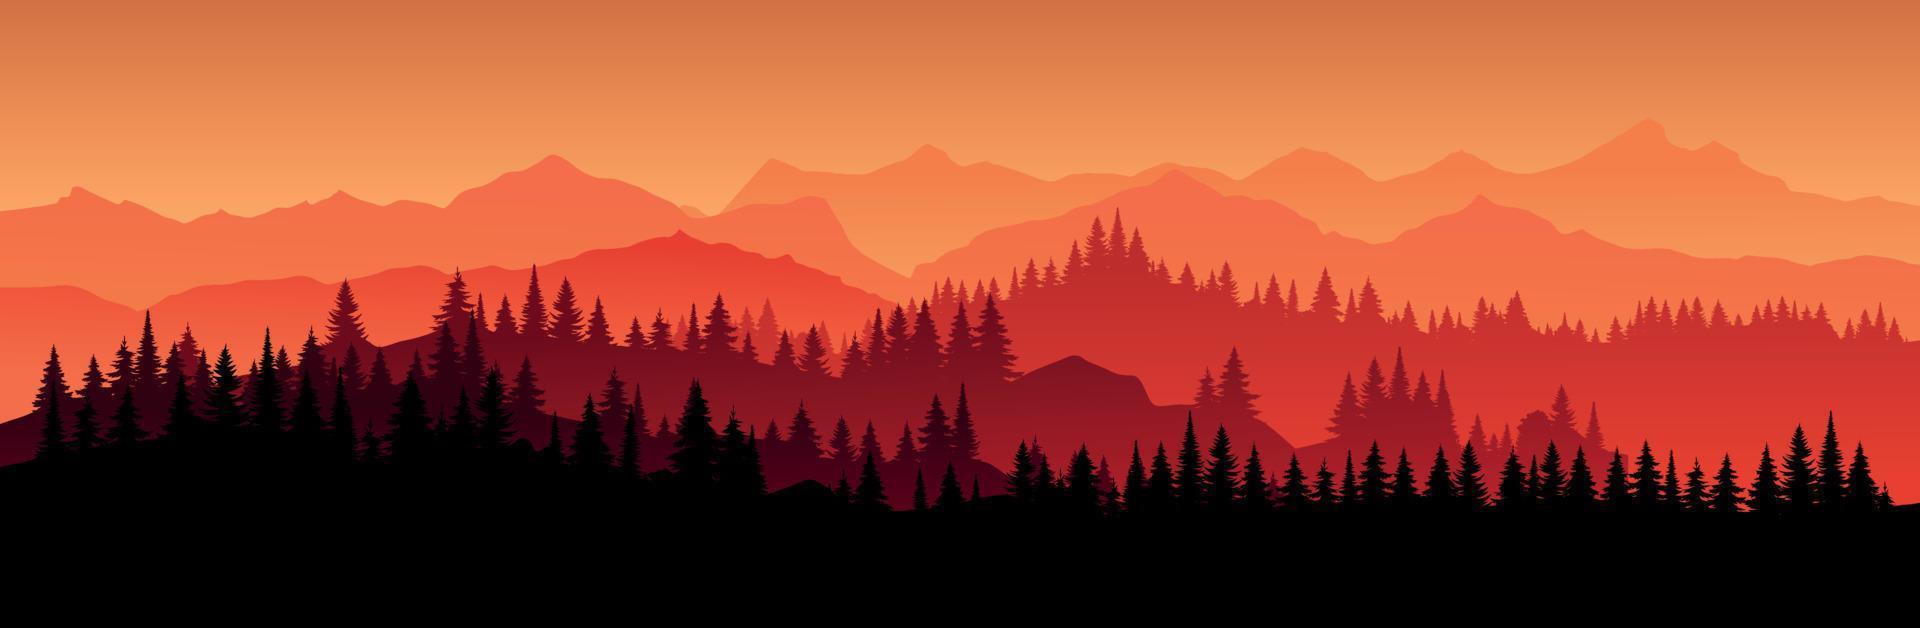 paisaje horizontal rojo vectorial con niebla, árbol de navidad forestal, abeto, abeto y luz solar matutina. ilustración de montañas de silueta, niebla y siluetas de vista panorámica. fuego en el bosque. vector